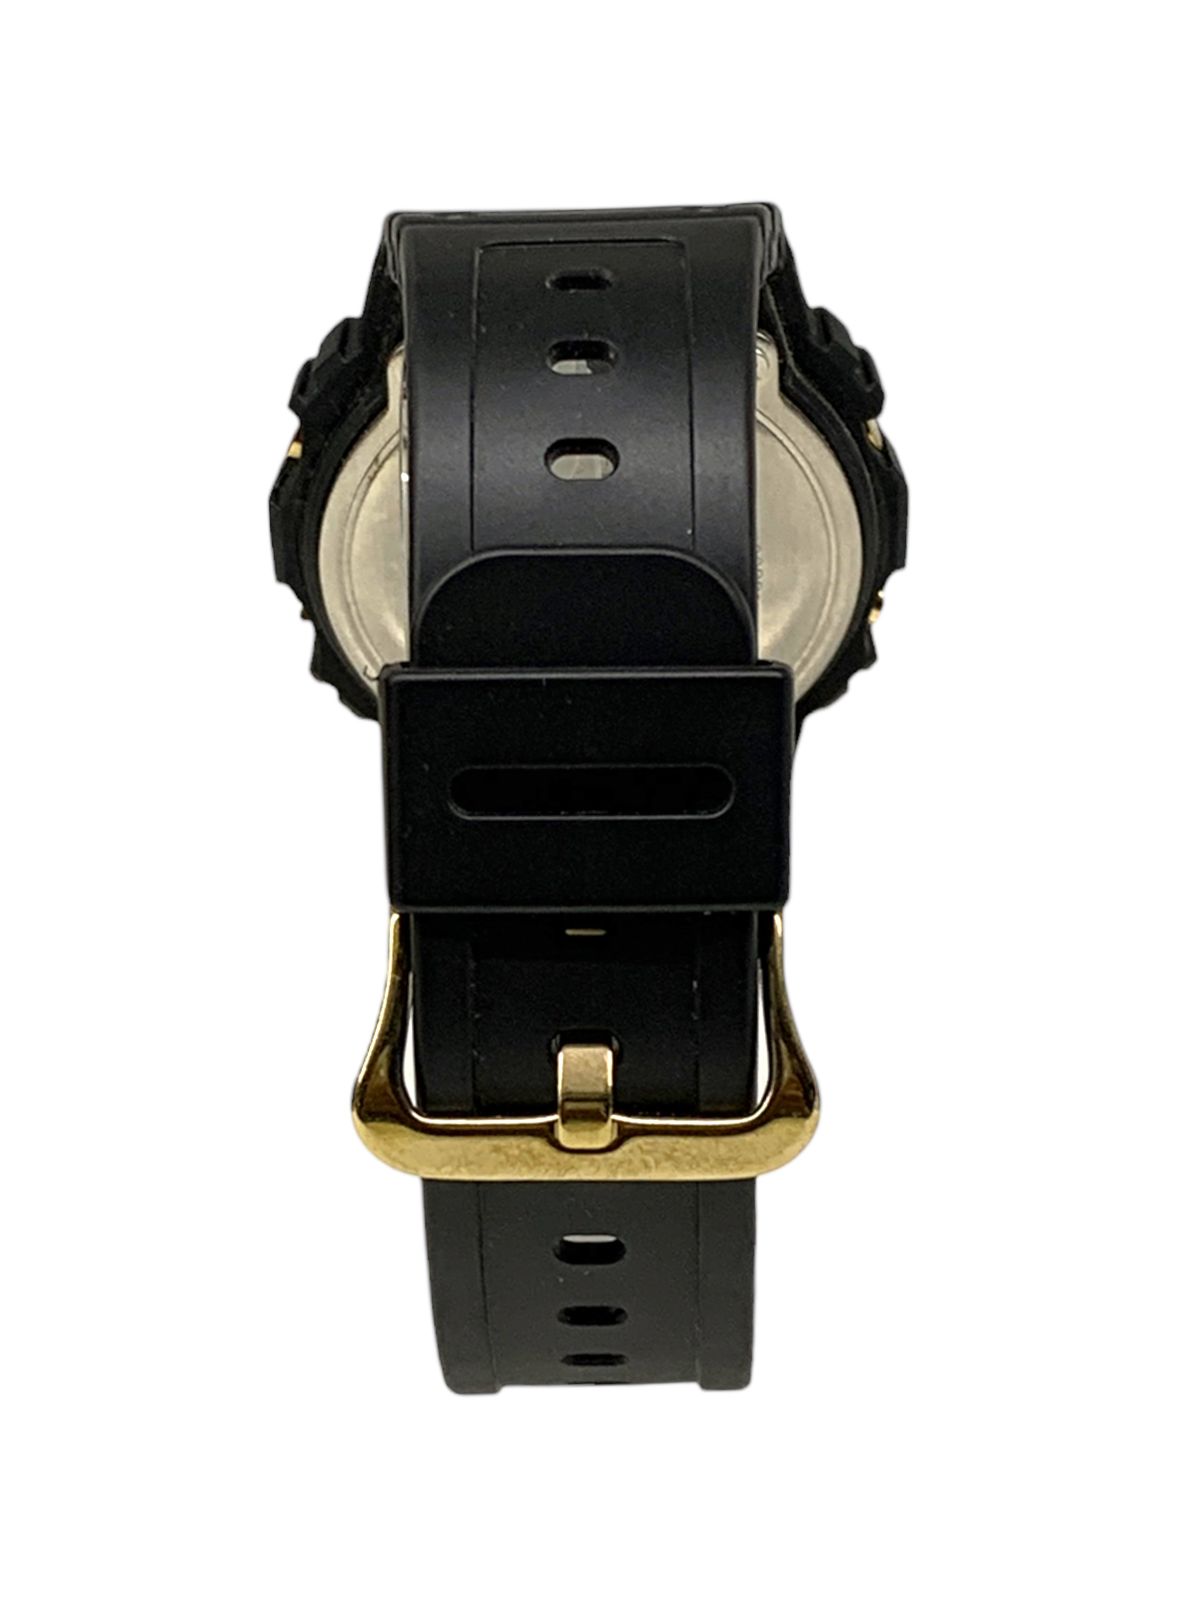 CASIO (カシオ) G-SHOCK Gショック DW-5600BBMB クォーツ デジタル 腕時計 ゴールド ブラック メンズ/025